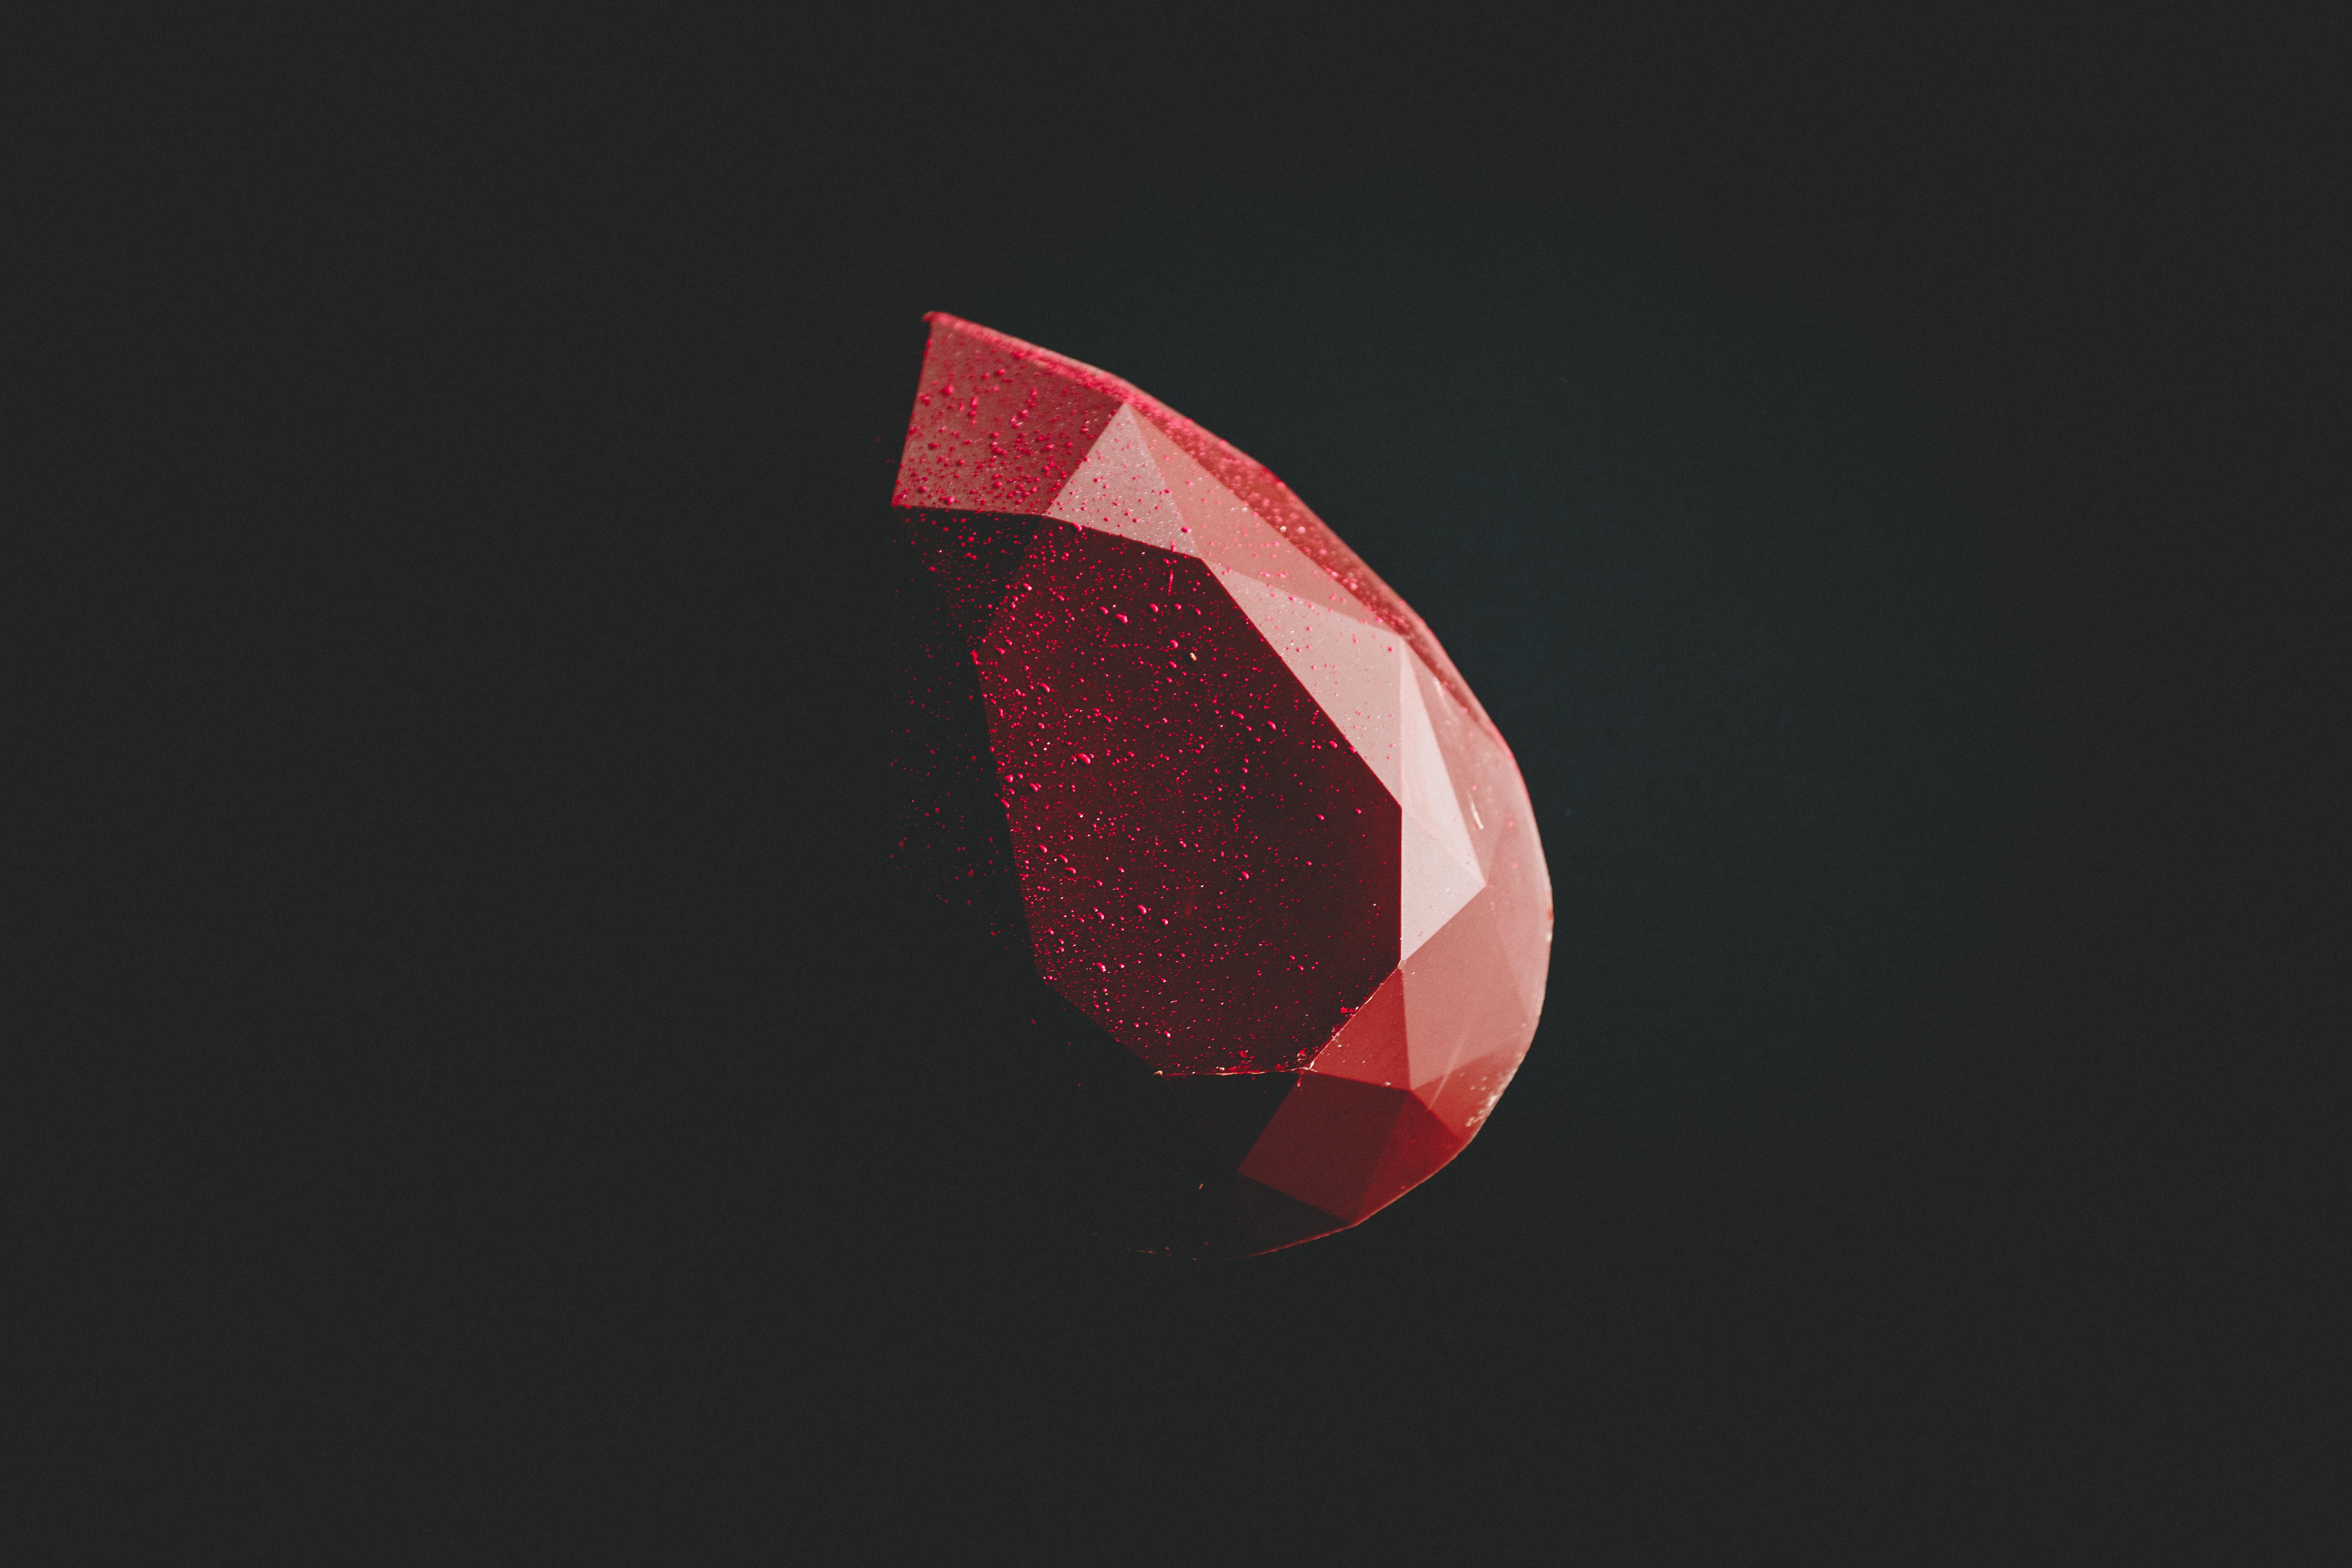 #diamond, #minimalist, #minimalism, #dark, #hd, k, k, #black, #red, #shape. Mocah.org HD Desktop Wallpaper